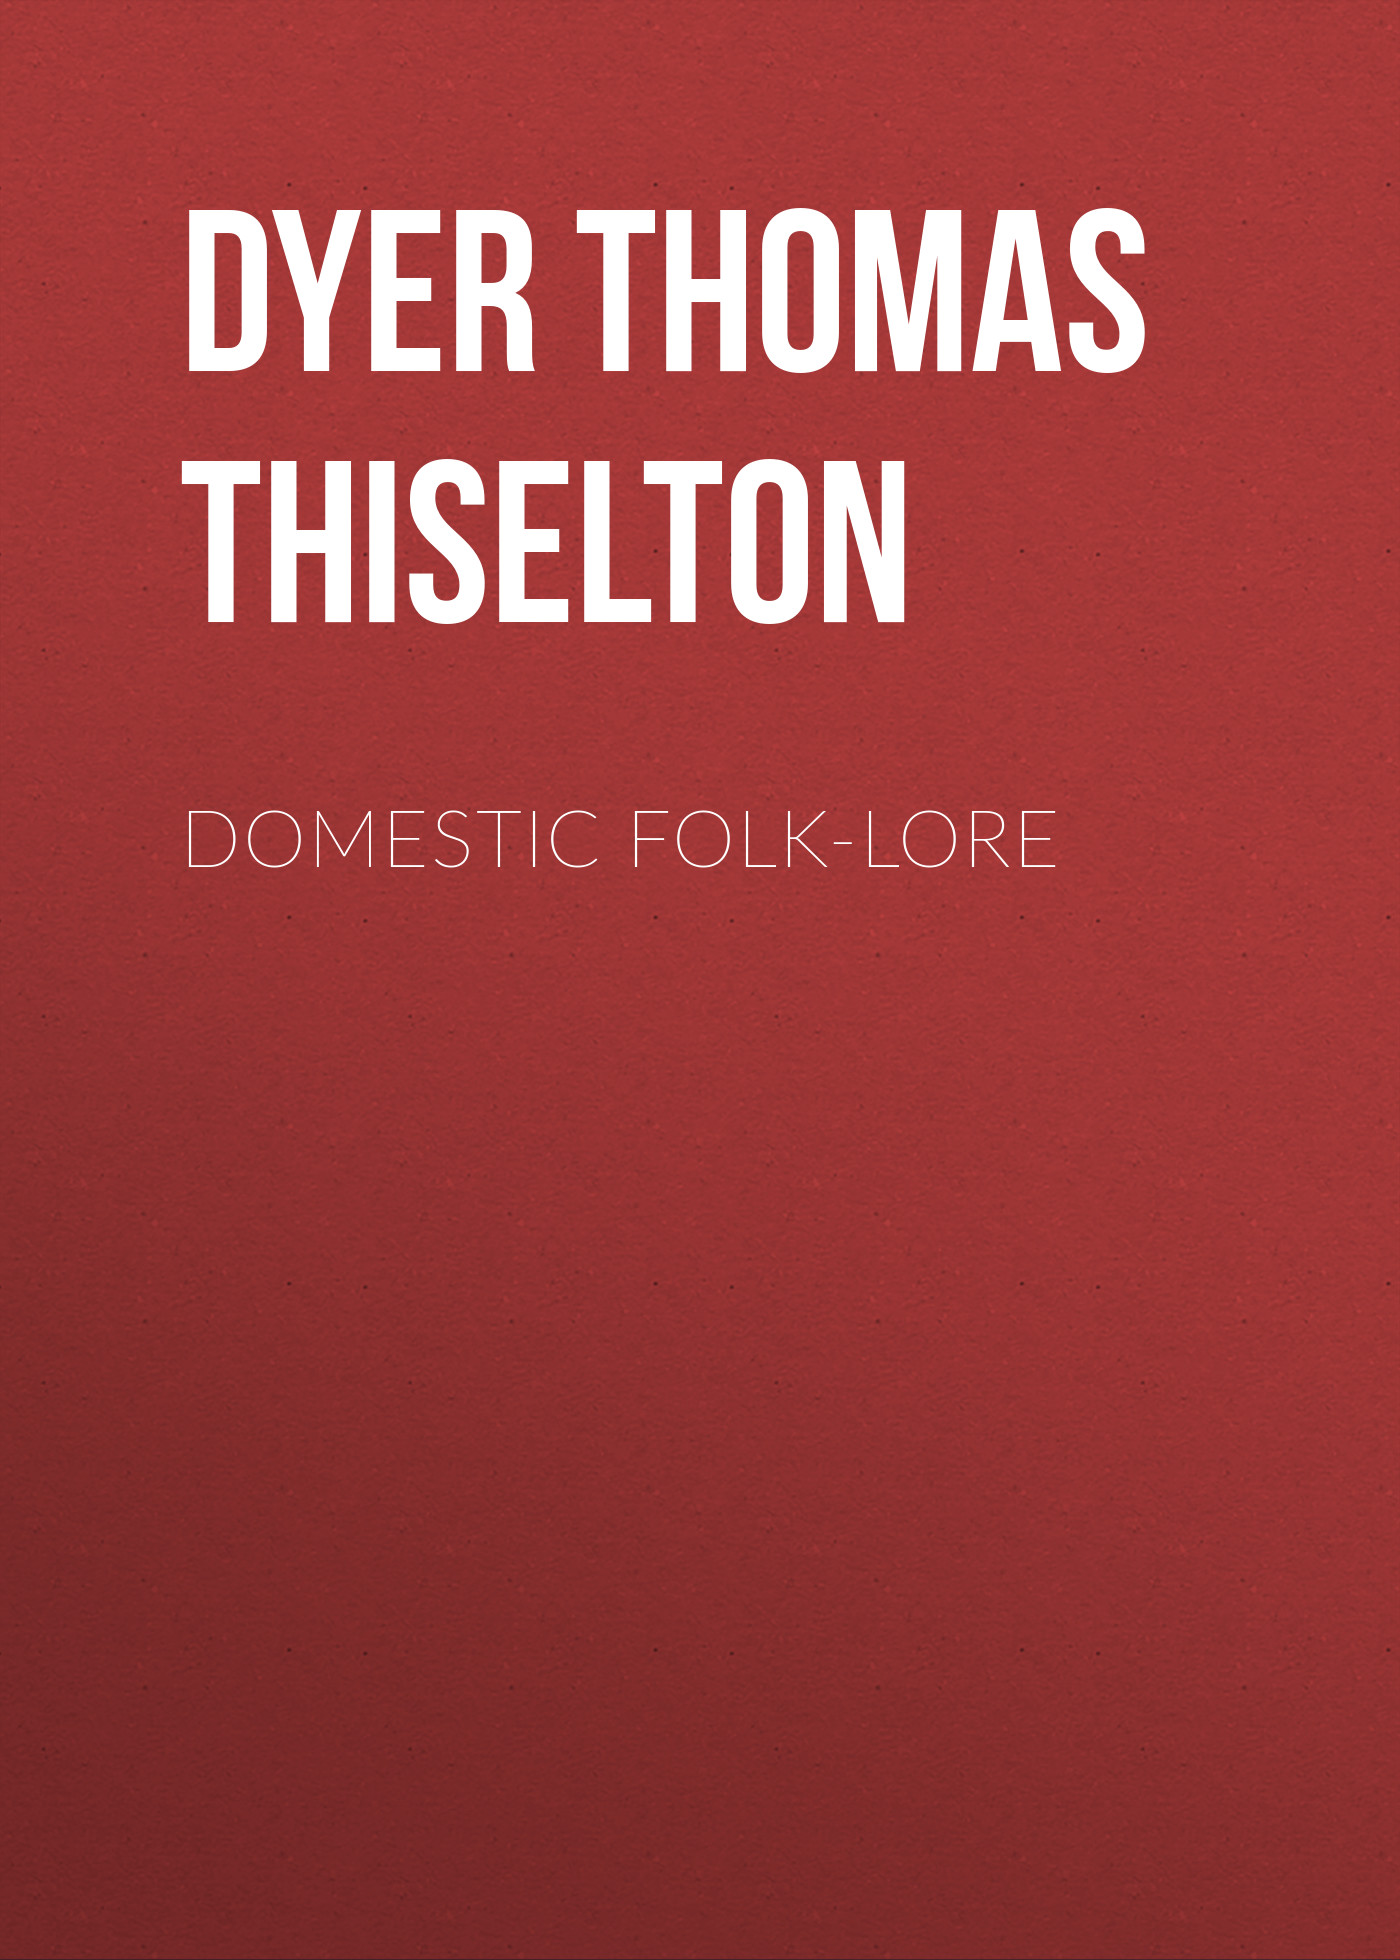 Книга Domestic folk-lore из серии , созданная Thomas Dyer, может относится к жанру Зарубежная старинная литература, Зарубежная классика. Стоимость электронной книги Domestic folk-lore с идентификатором 24621925 составляет 0 руб.